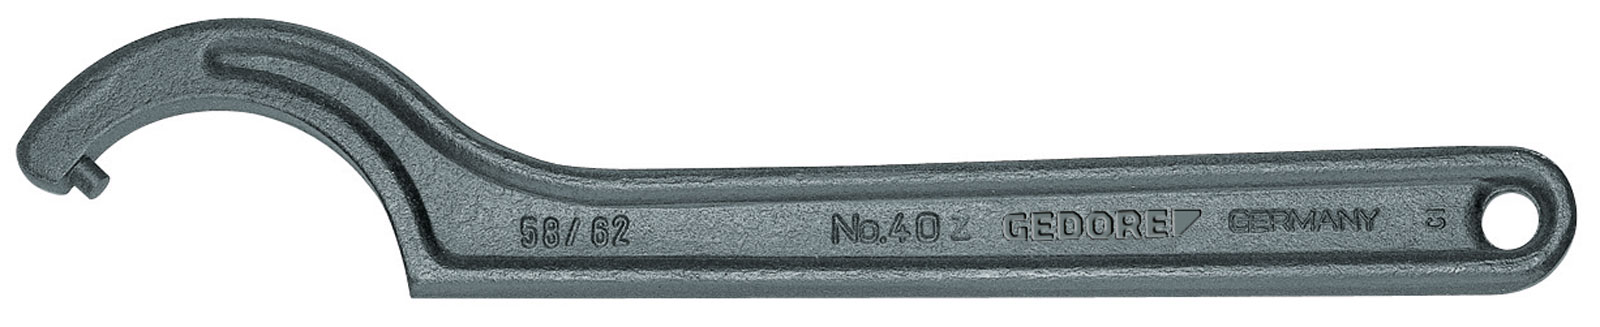 Bild von 40 Z 135-145 Hakenschlüssel, DIN 1810 Form B, 135-145 mm